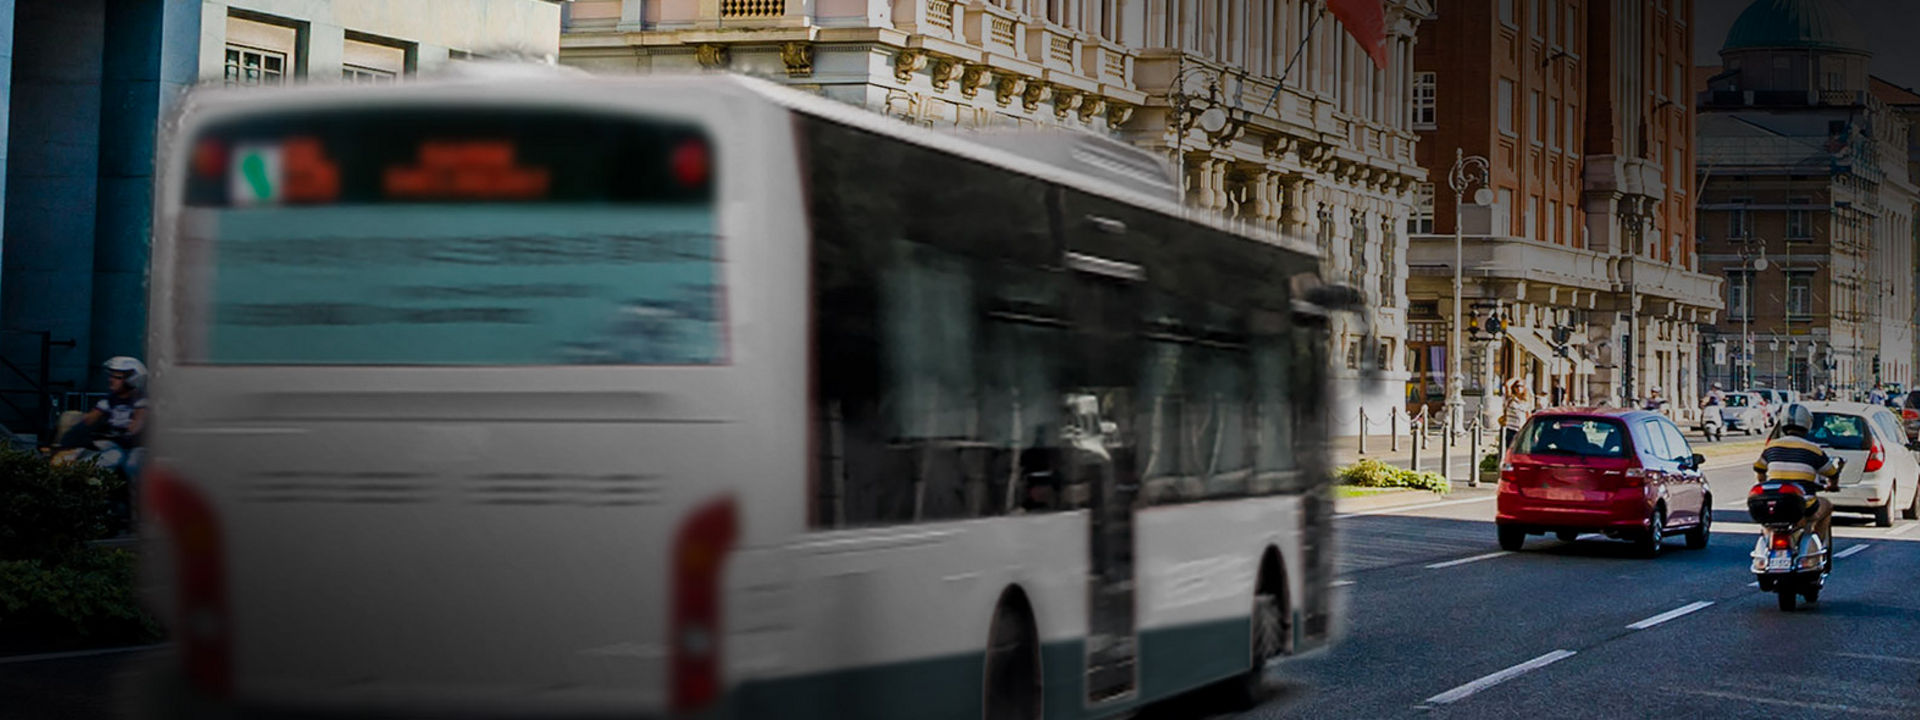 Cette image vous montre l'arrière d'un bus équipé de pneus Bus Urbain Bridgestone circulant dans le centre ville.